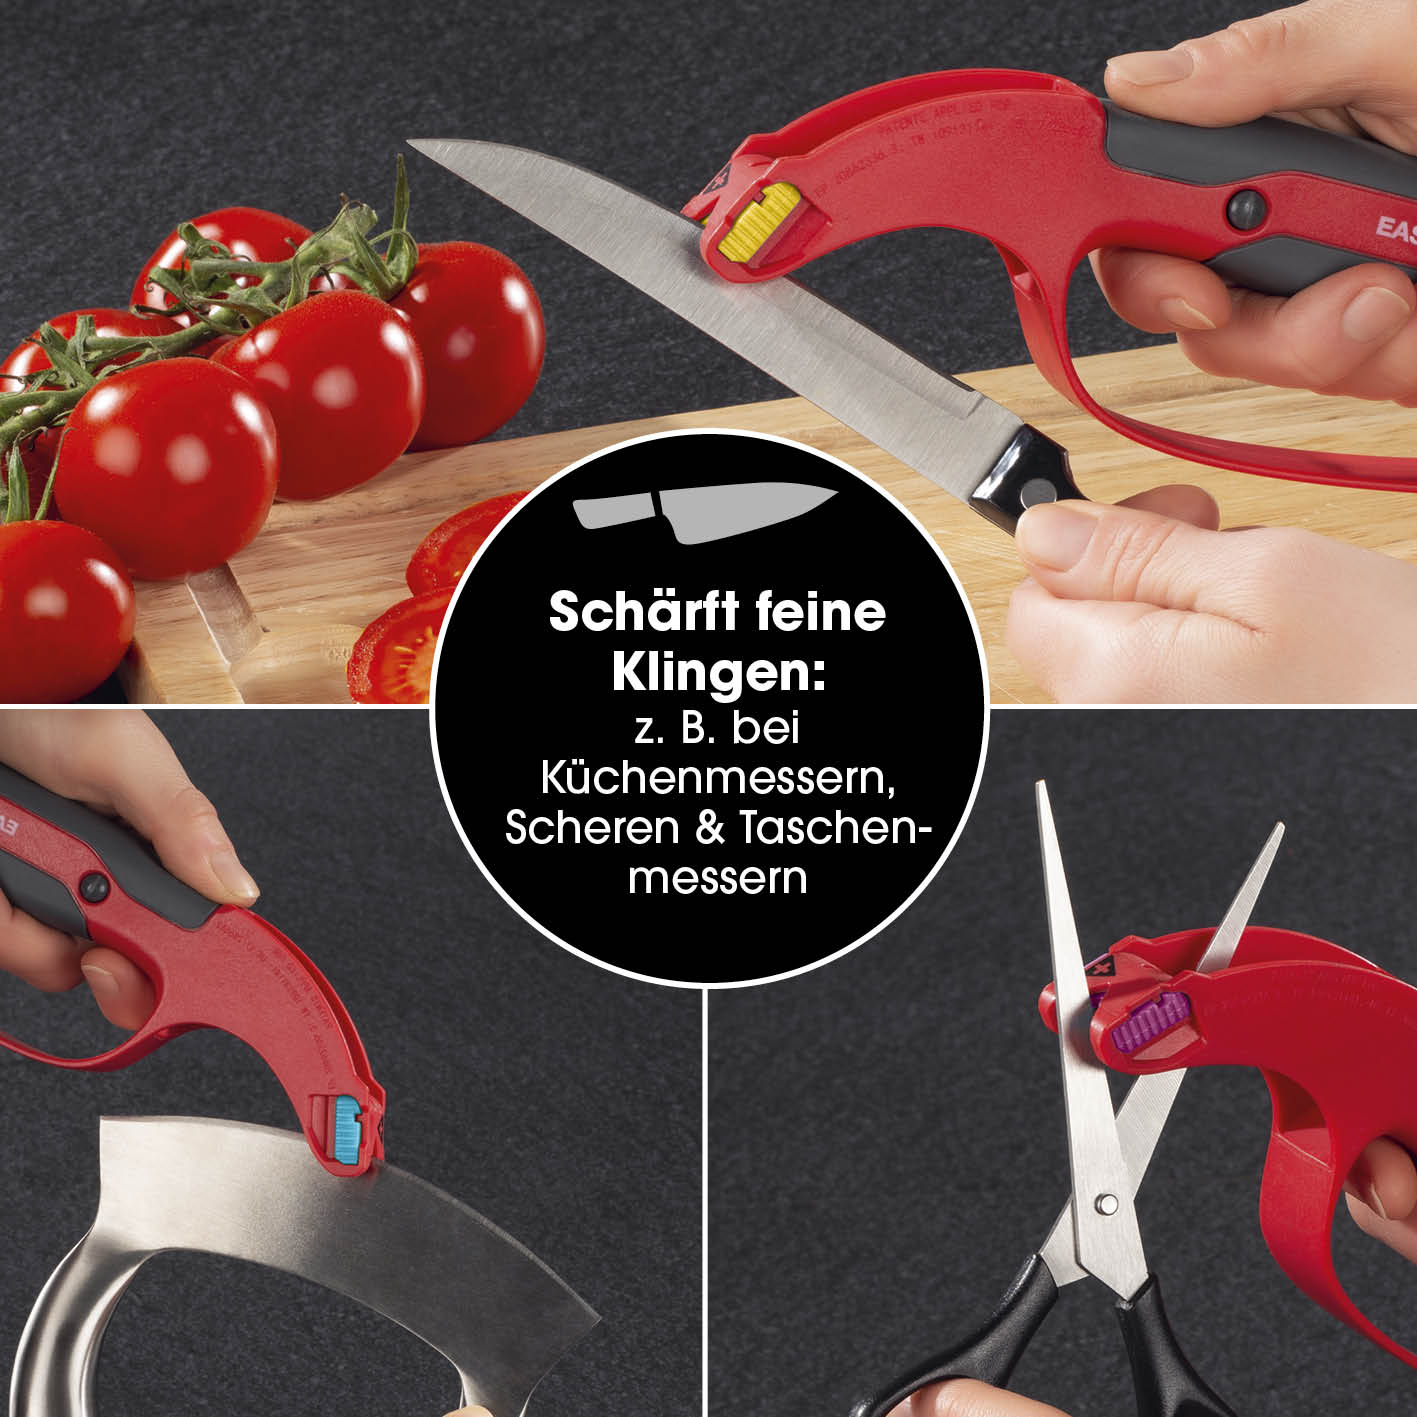 Klingenschärfer und Schärfeinsätze - für Messer, Werkzeug, Gartengeräte